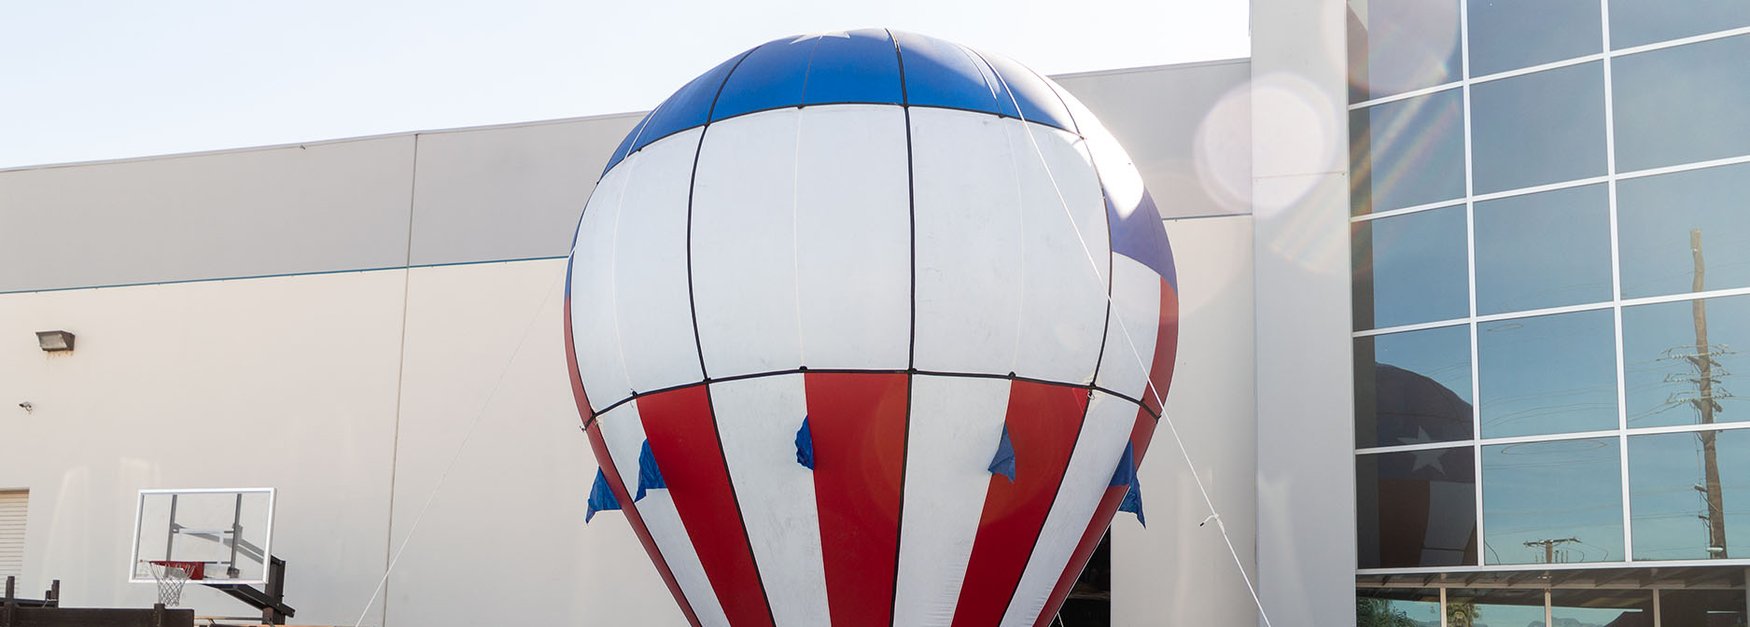 hot-air-balloon-header.jpg